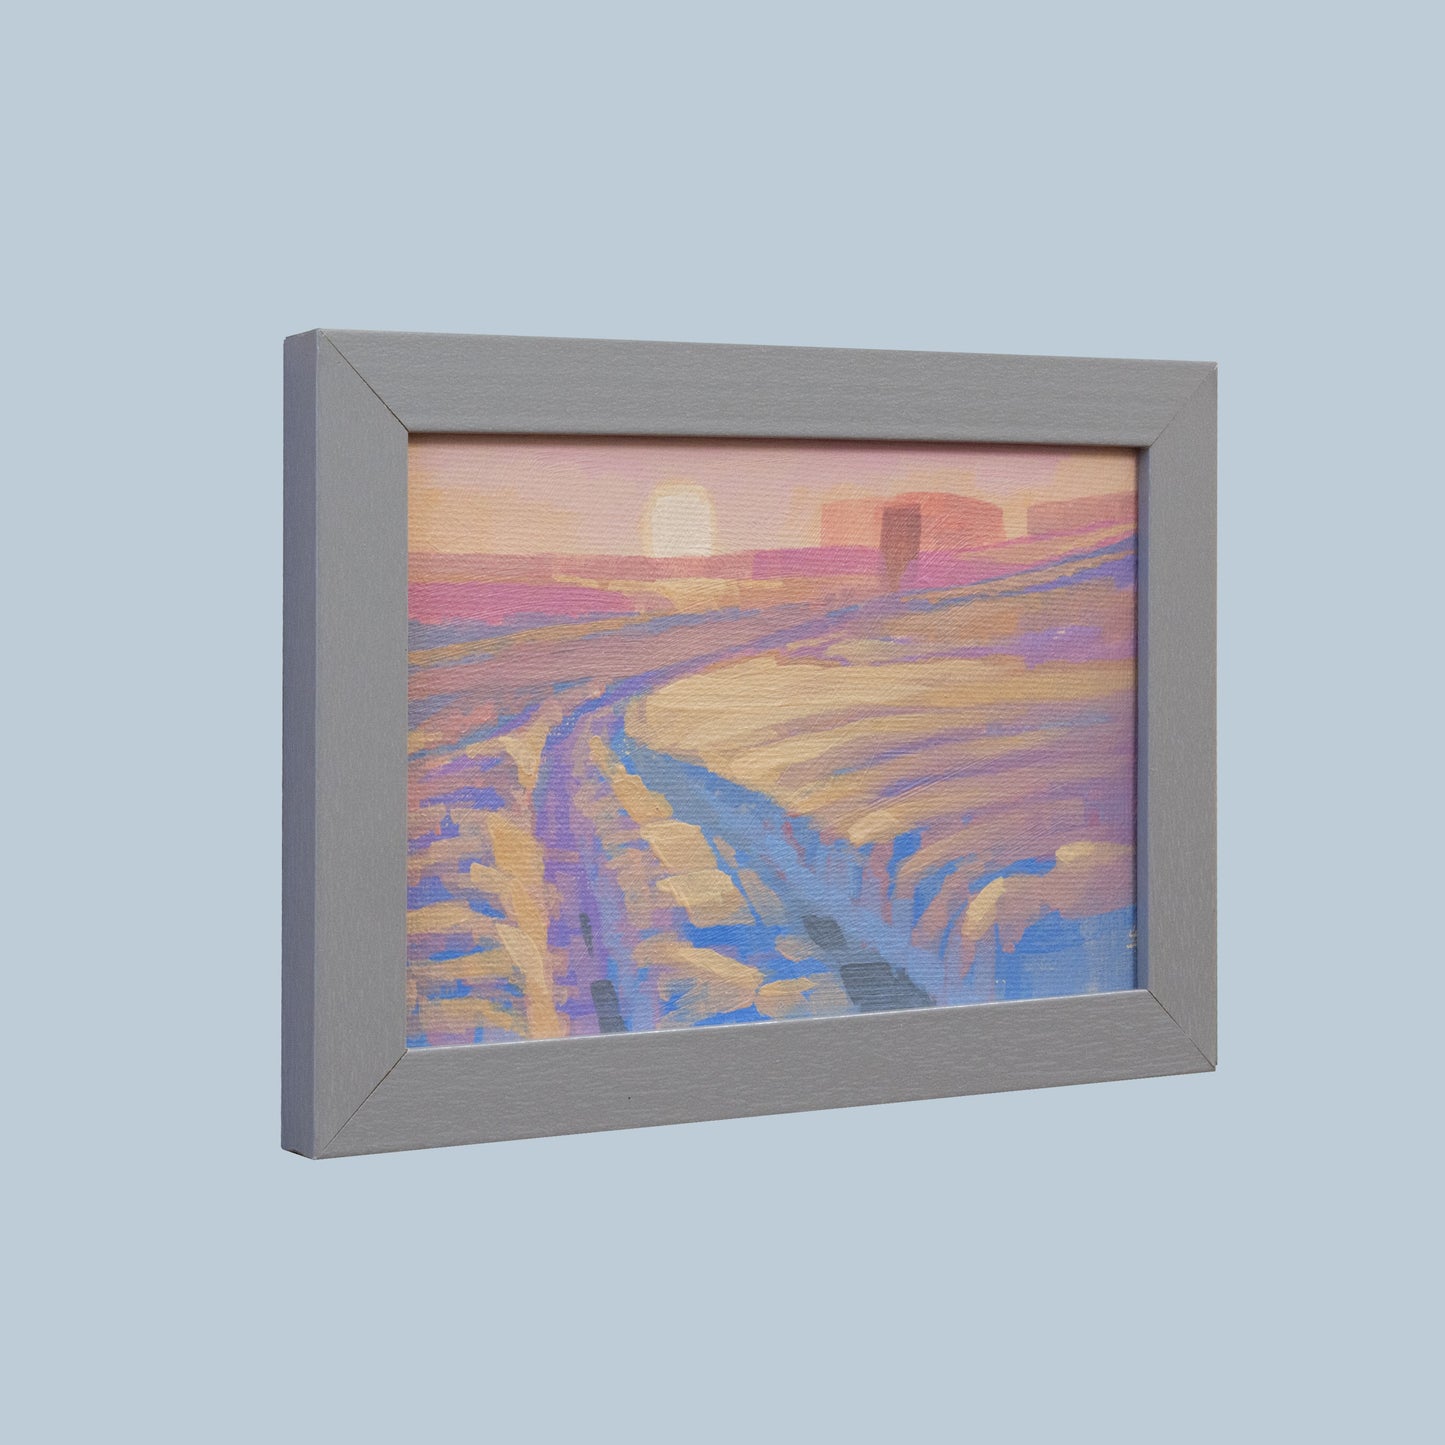 Original Gemälde – "Wintersonne" - handgemalt – Acrylbild – 10x15 cm – Landschaft Bild – Einzelstück – mit Rahmen